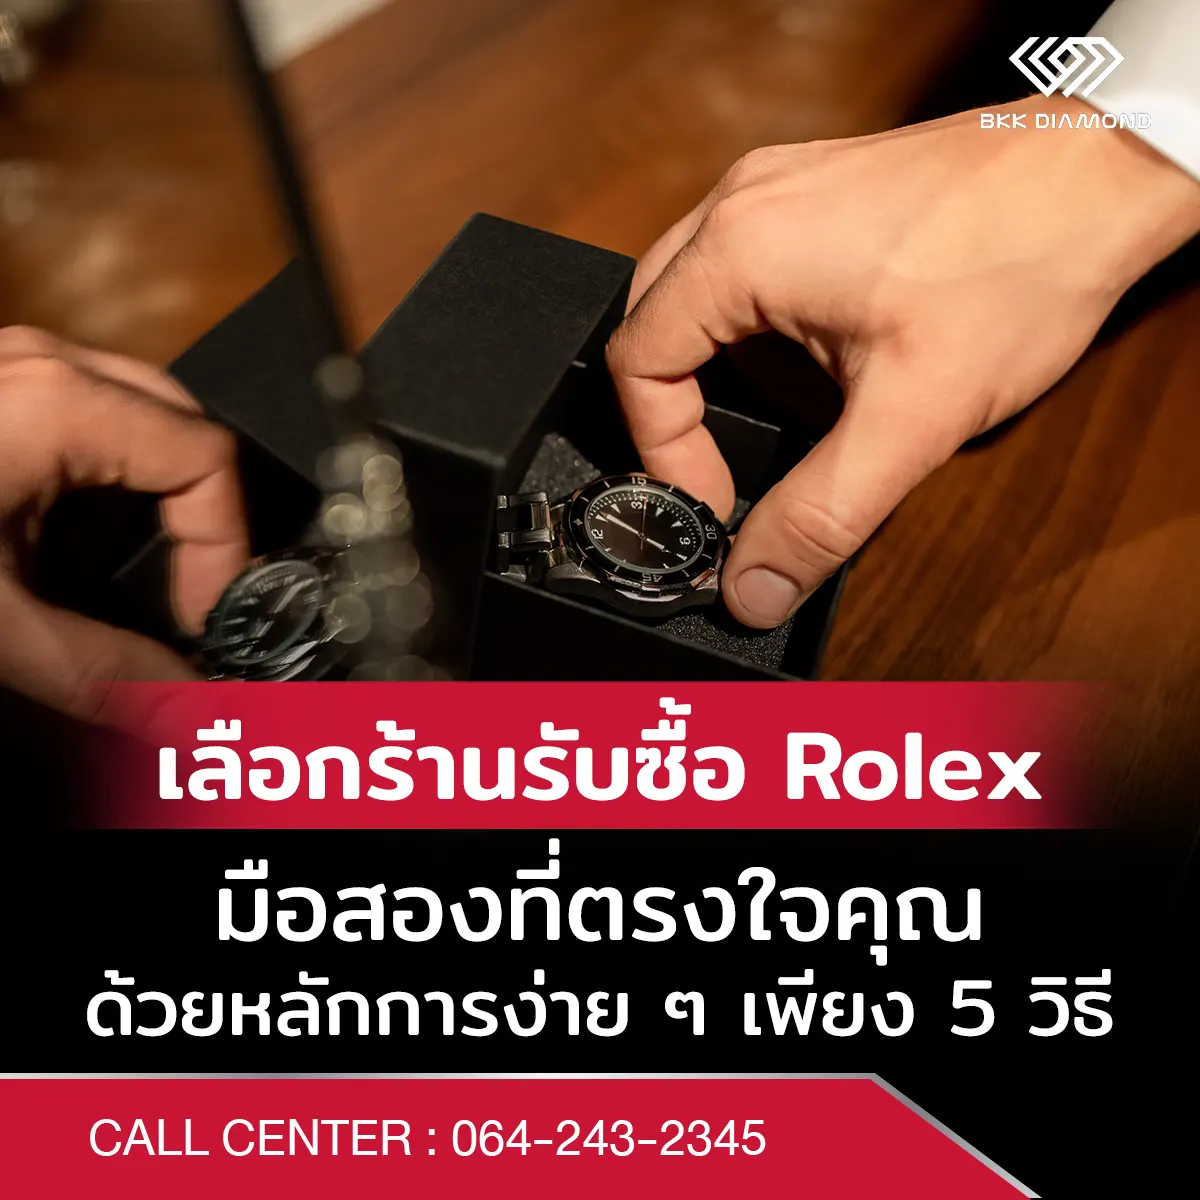 เลือกร้านรับซื้อ Rolex มือสองที่ตรงใจคุณ ด้วยหลักการง่าย ๆ เพียง 5 วิธี